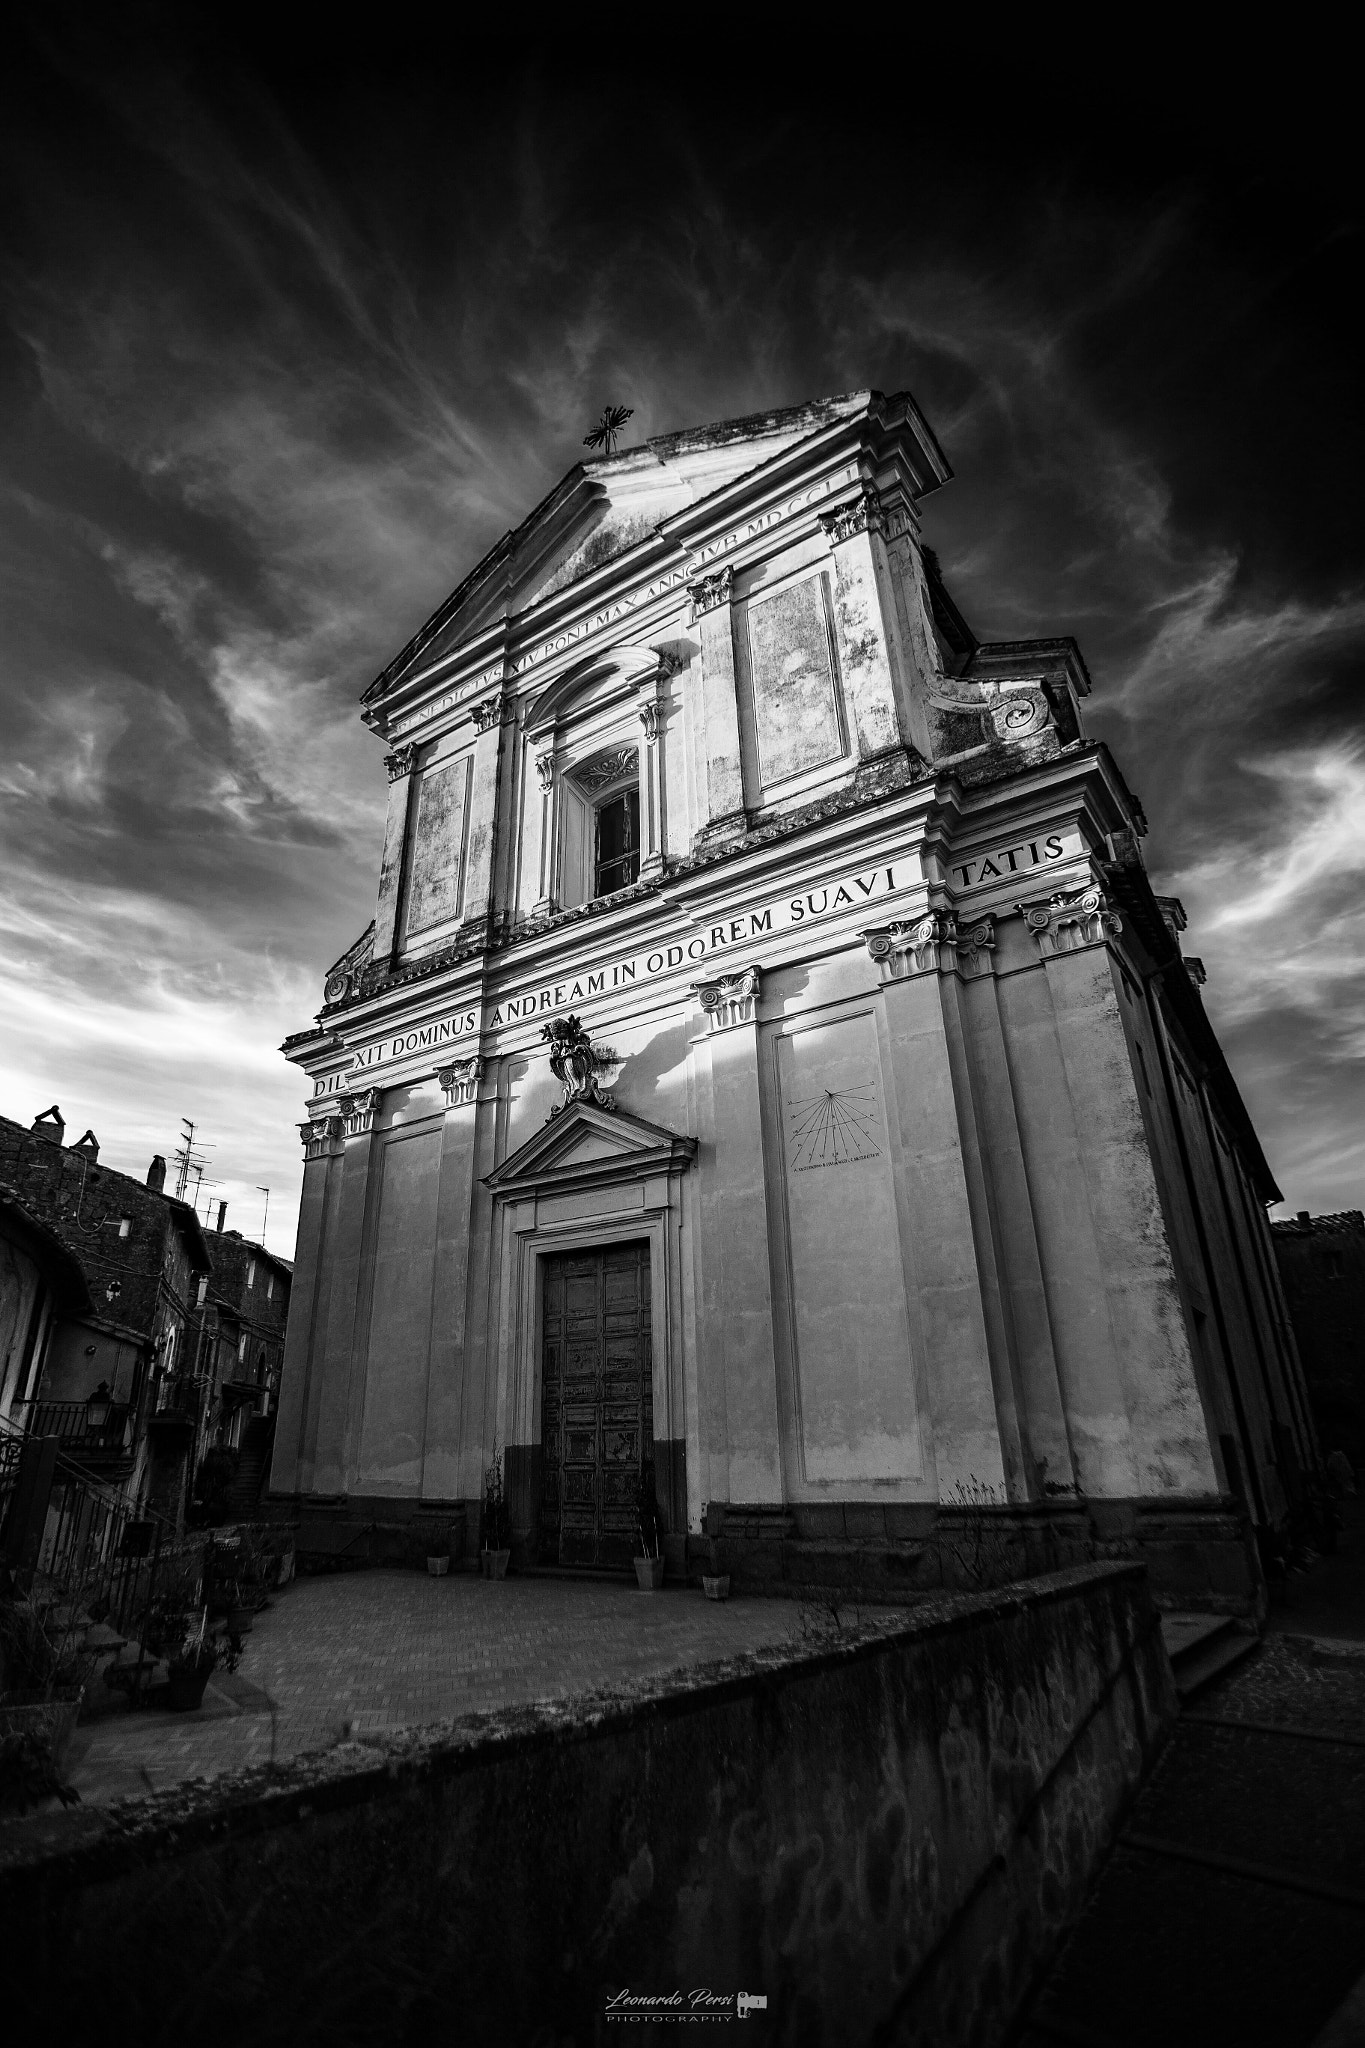 Canon EF 17-35mm f/2.8L sample photo. Chiesa di sant andrea,vallerano (vt). photography